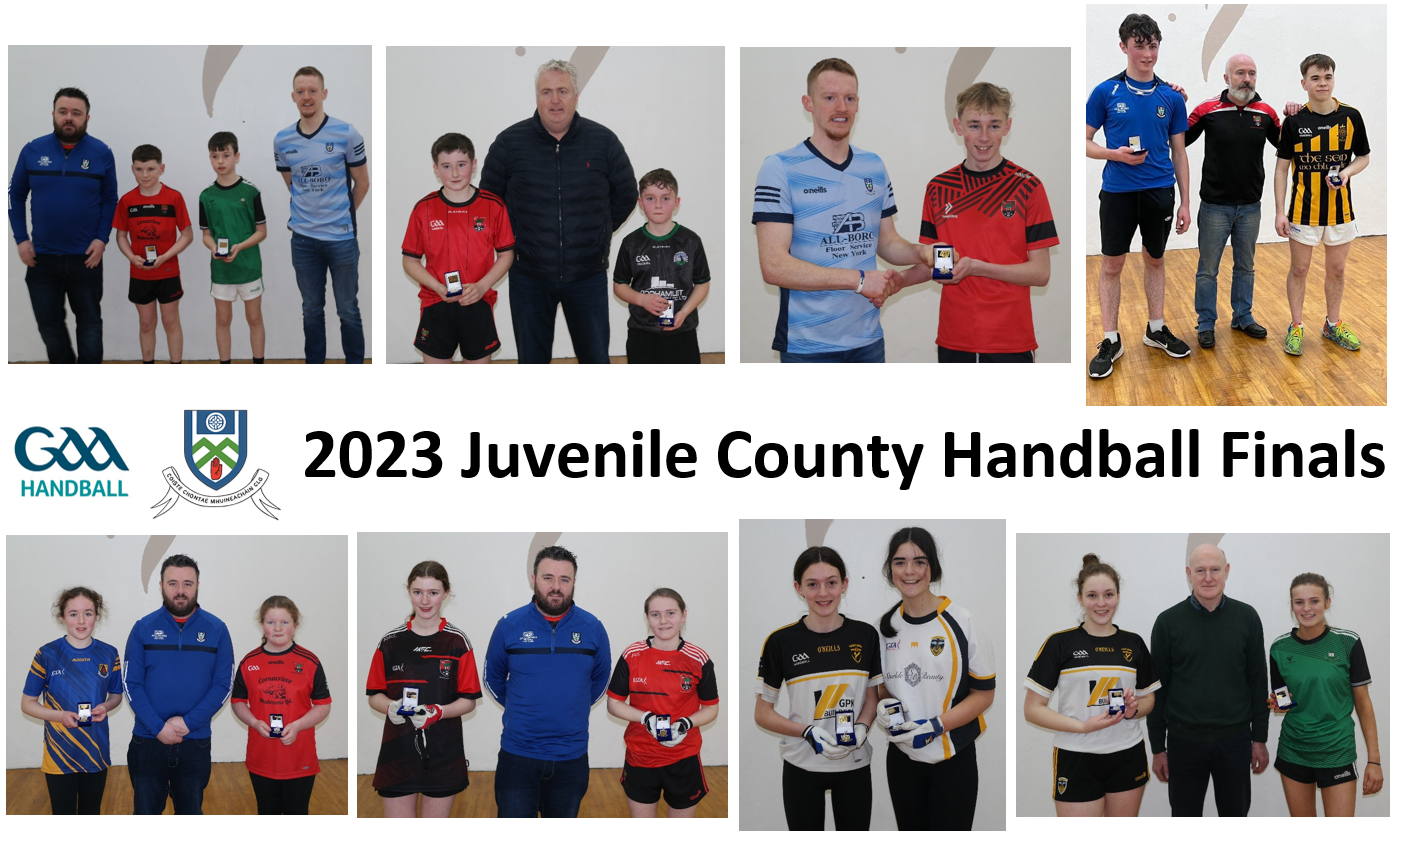 2023 Juvenile County Handball Finals a Huge Success!